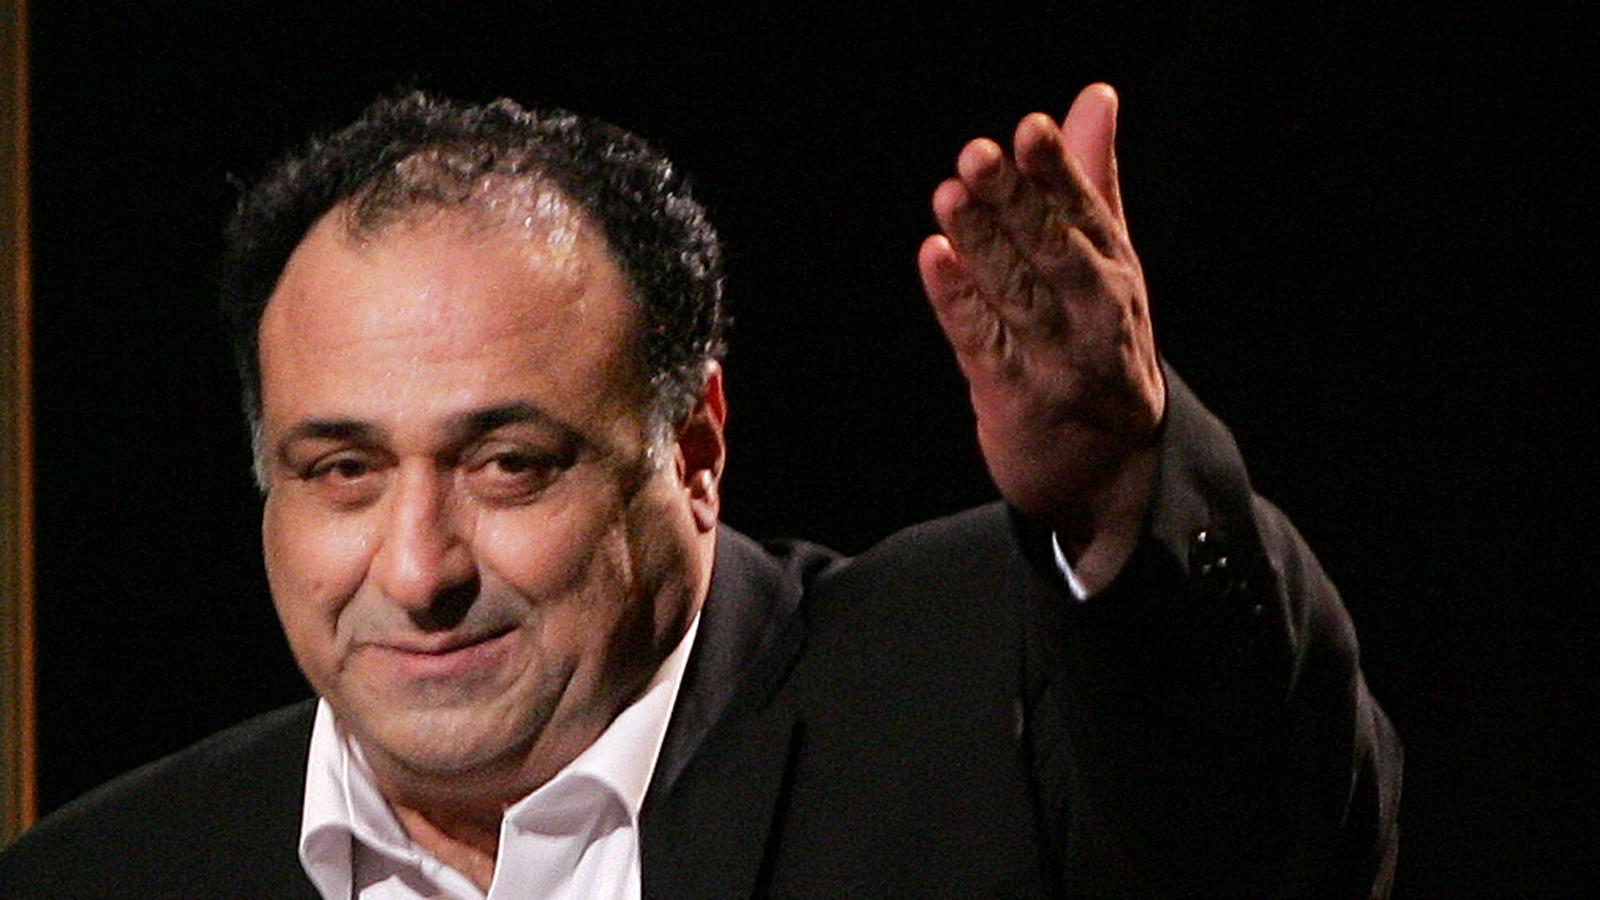 Hassan Brijany på Guldbaggegalan 2008, där han fick motta priset för bästa manliga biroll i filmen ”Ett öga rött”.